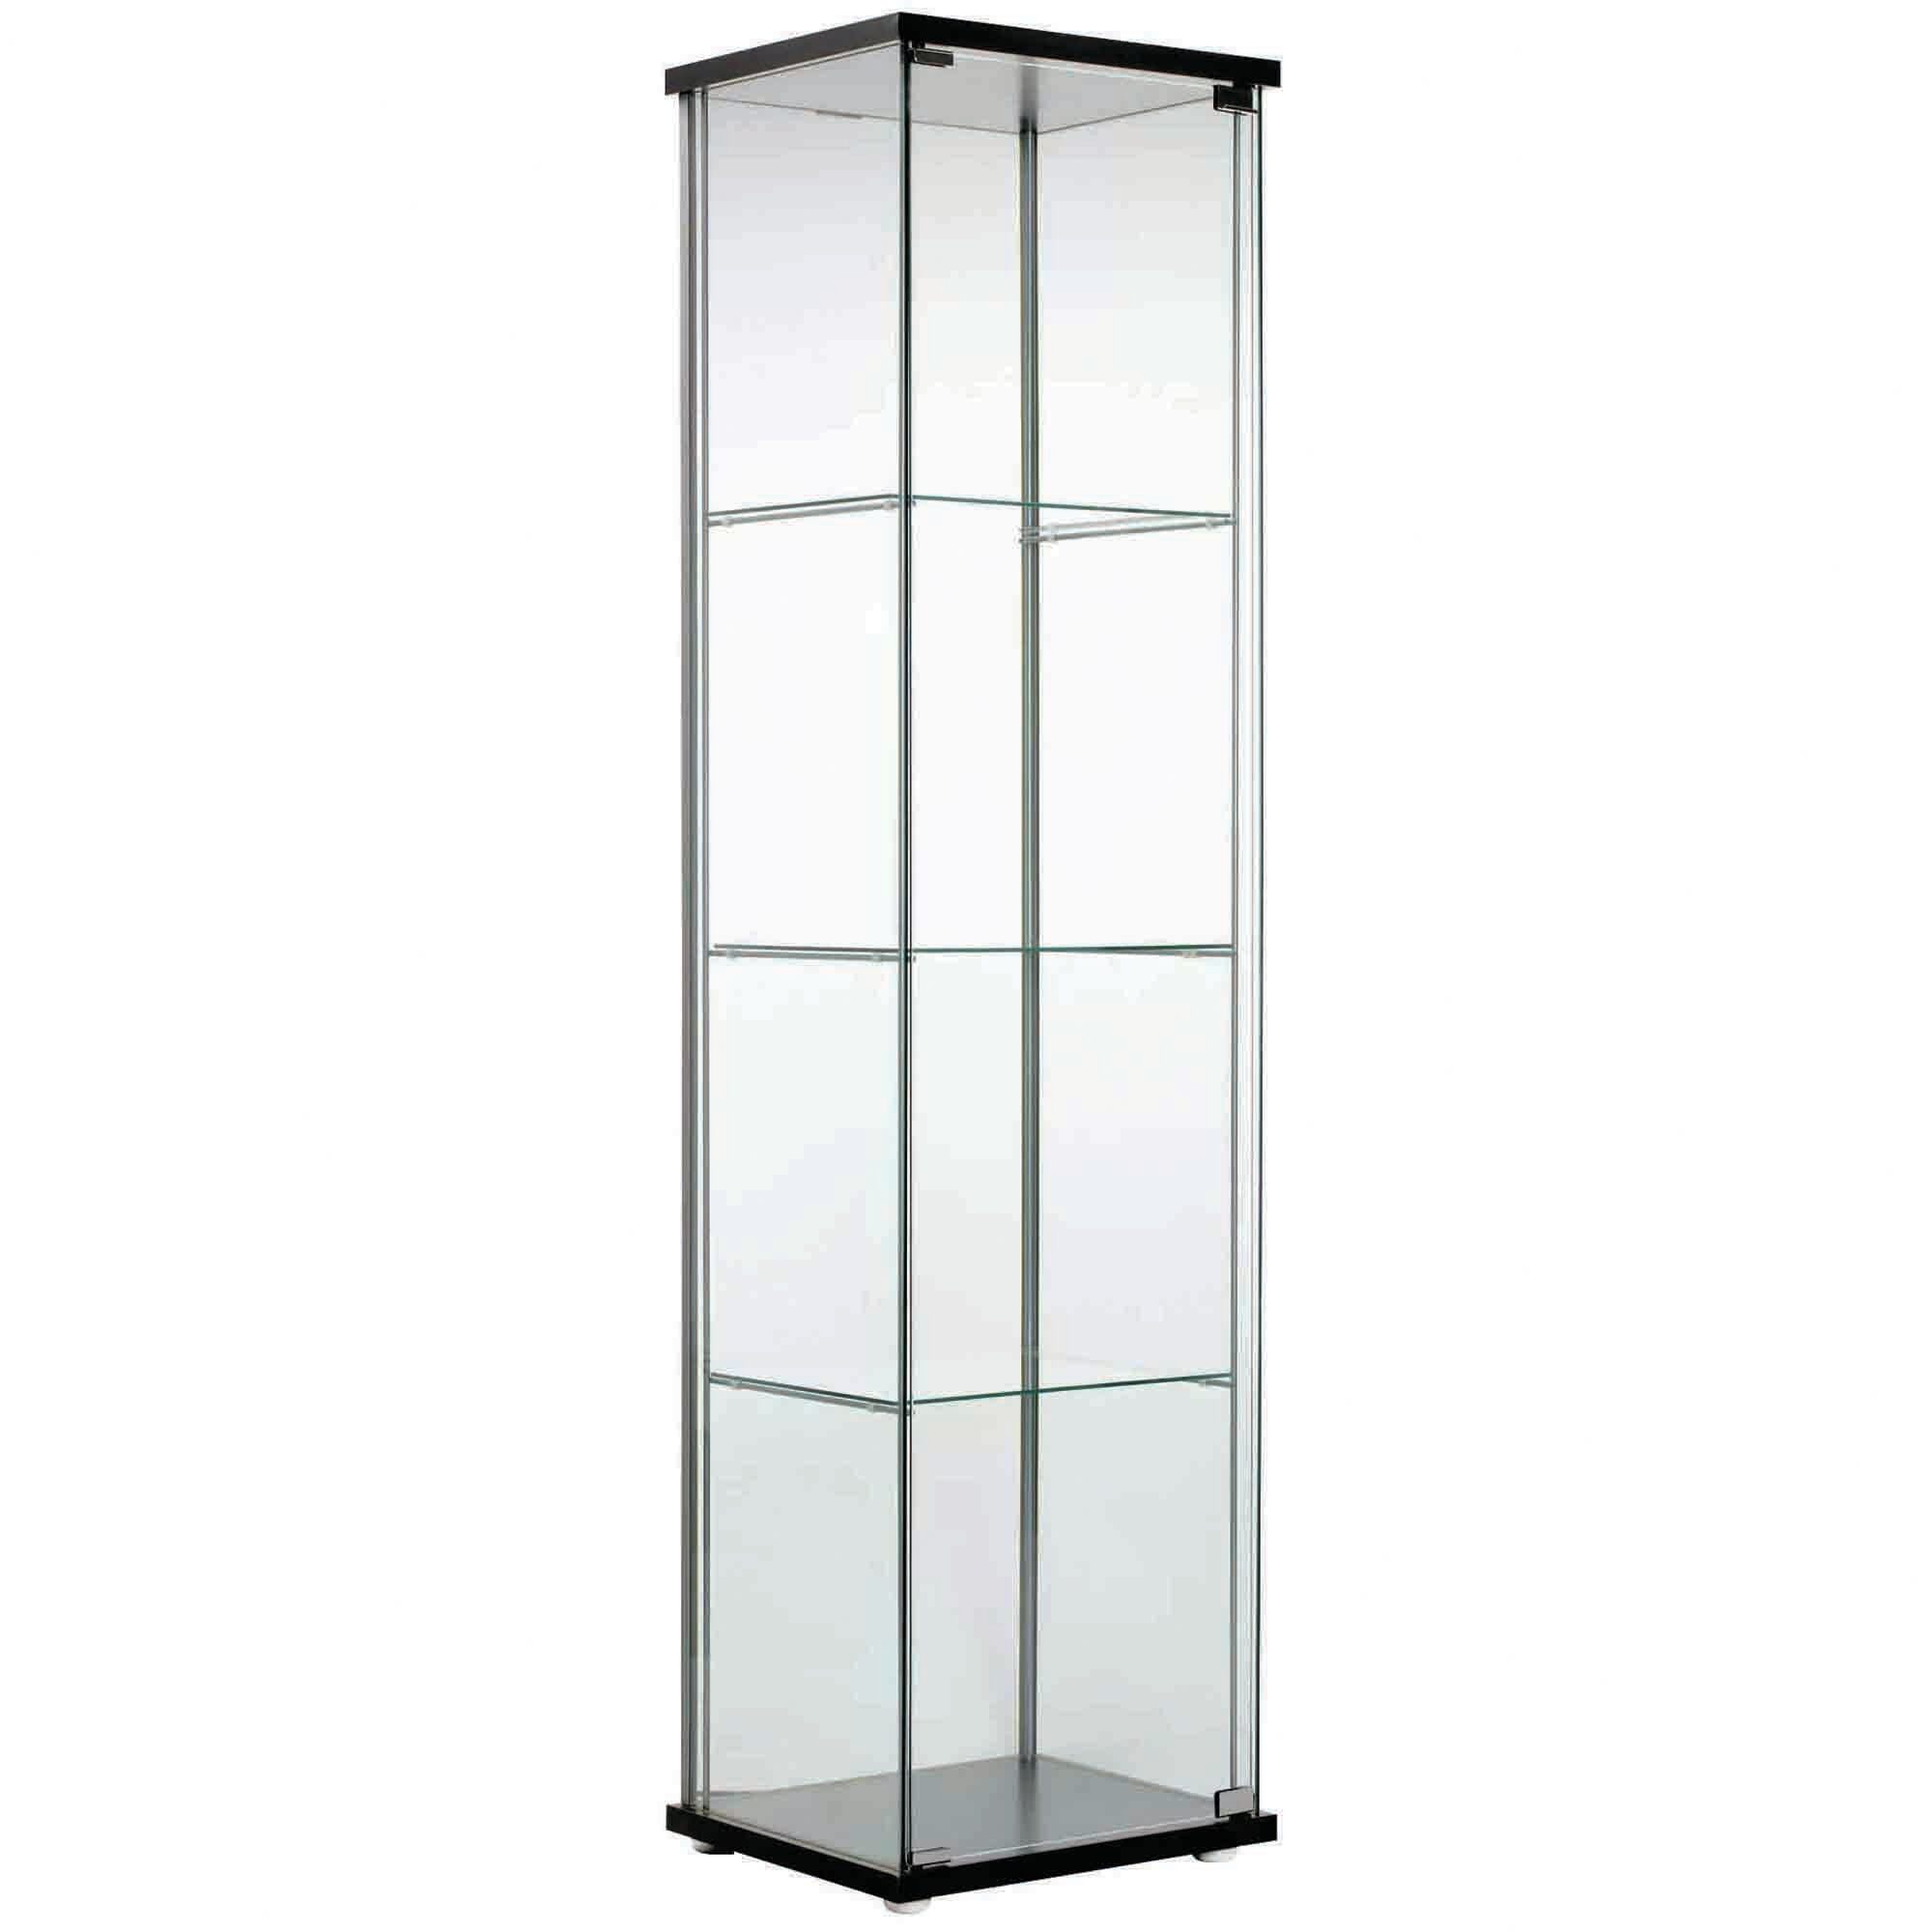 Kodu Single Door Glass Display Cabinet Temple Webster